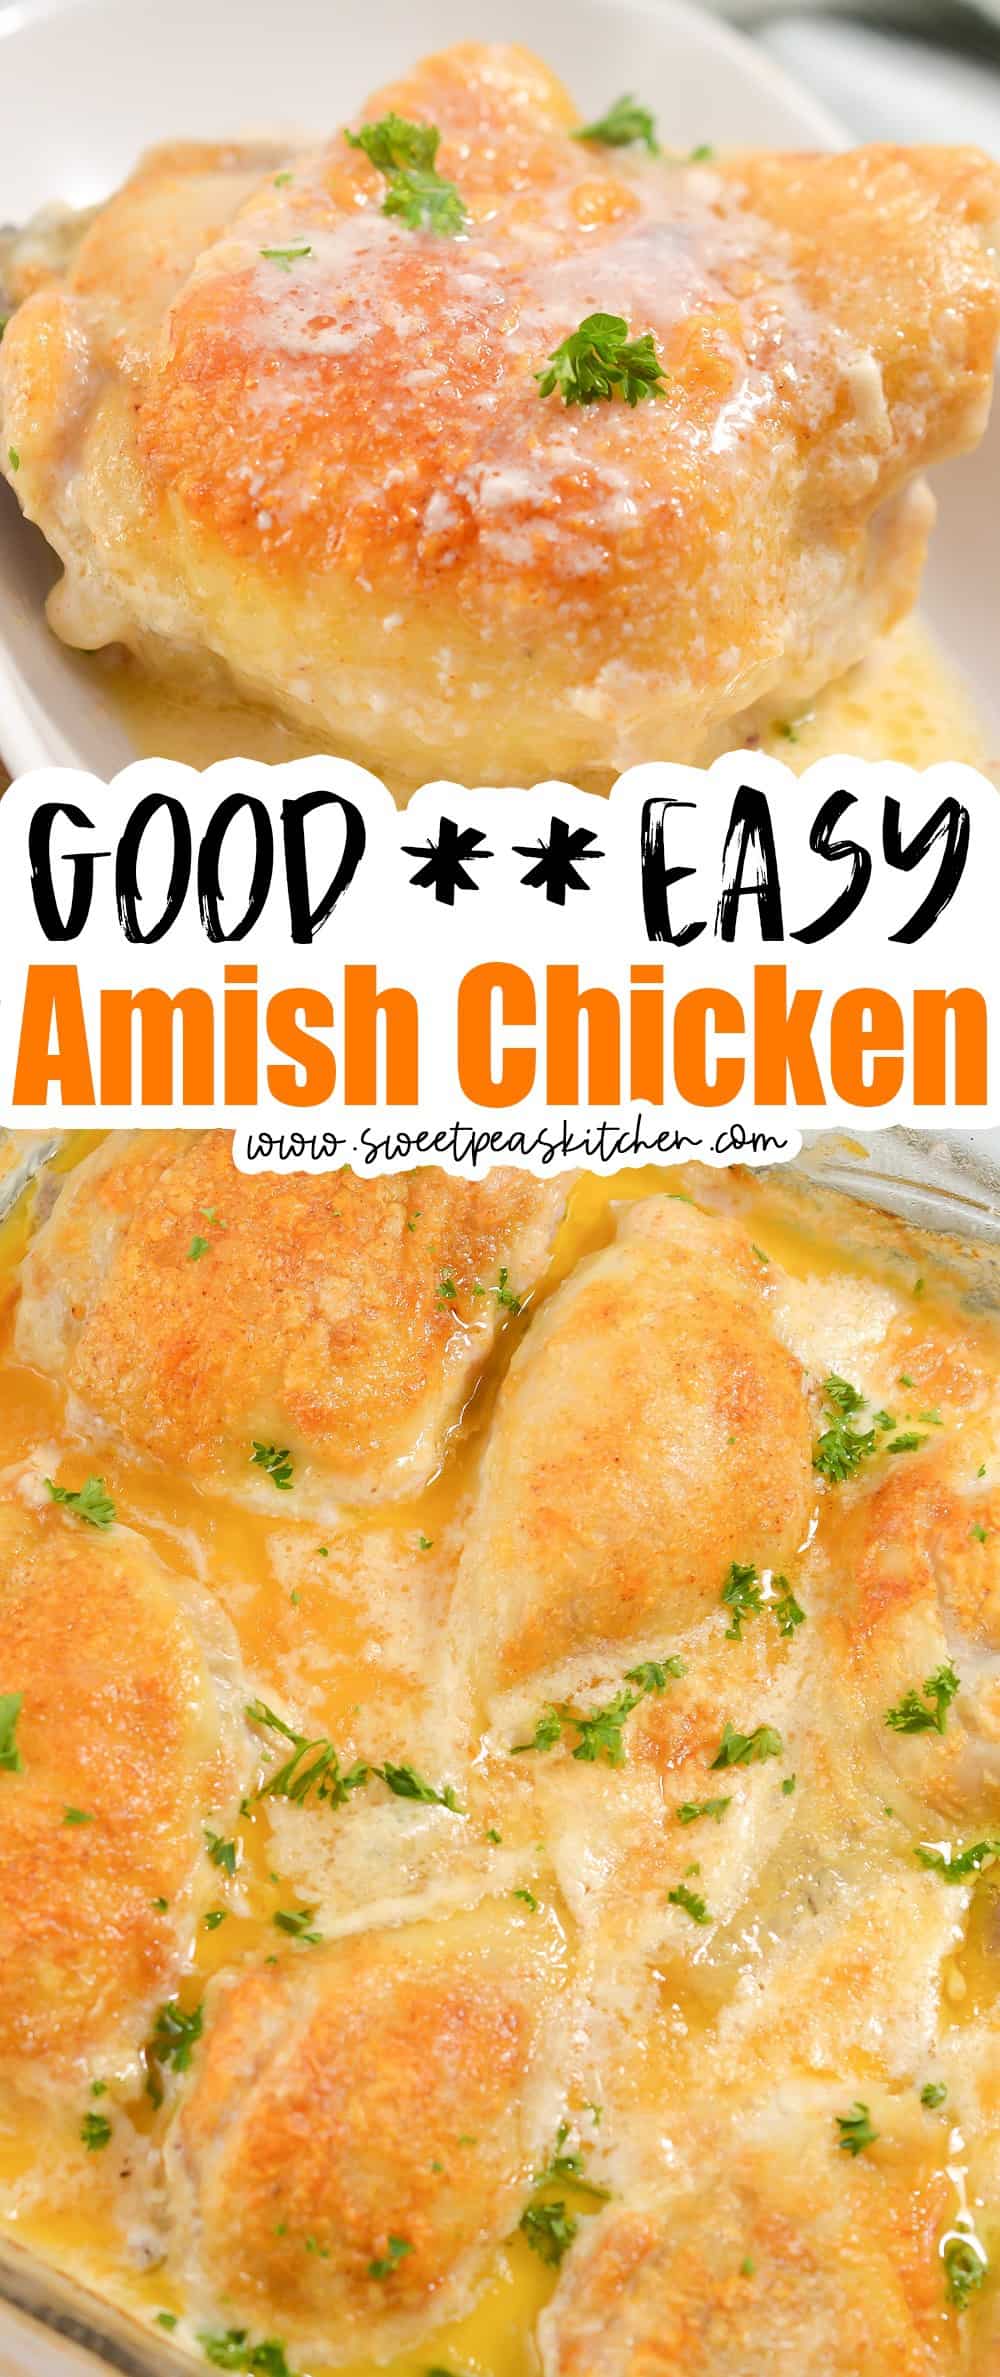 Amish Chicken on pinterest